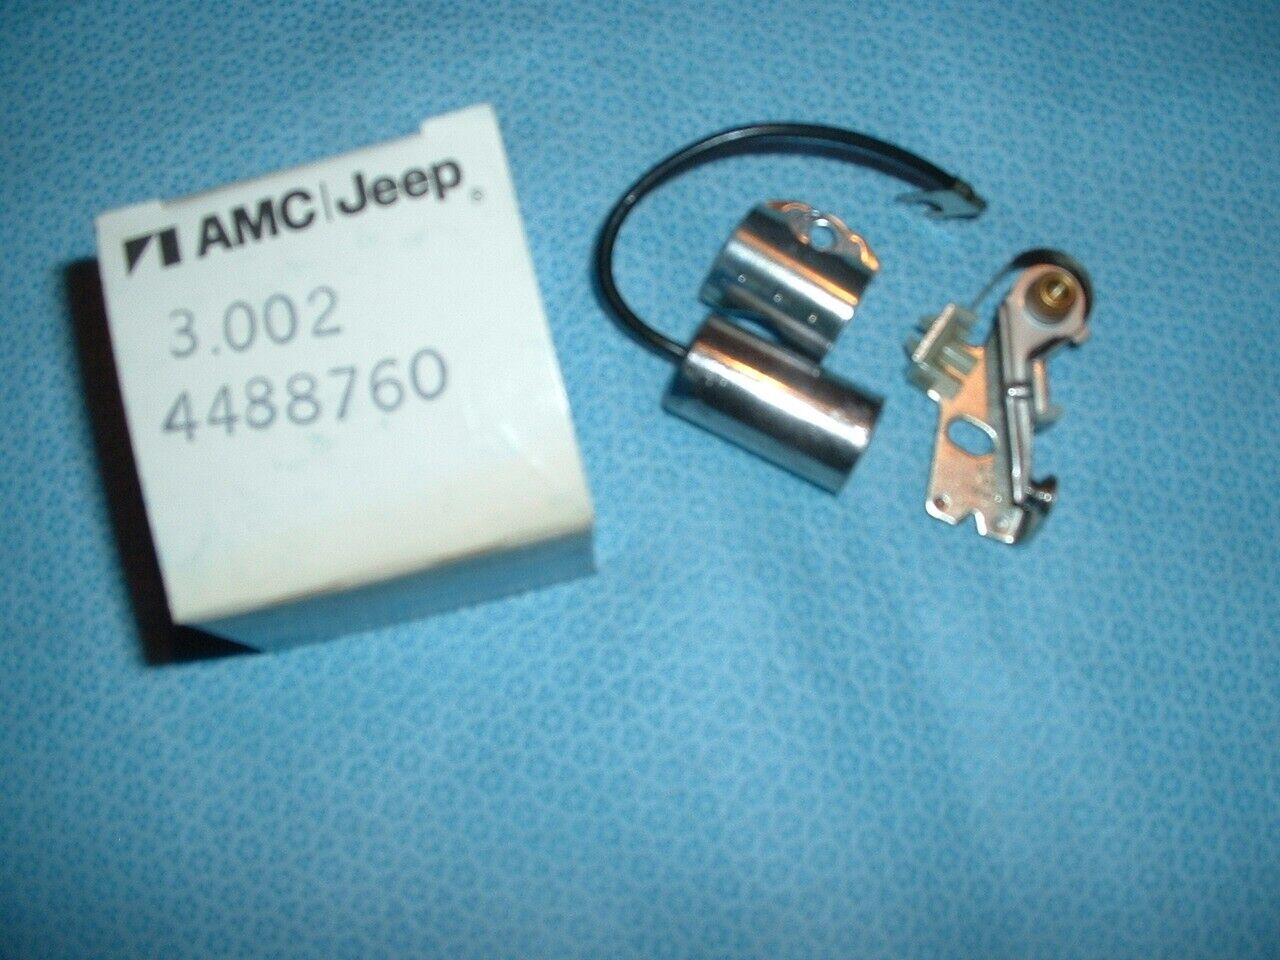 63-74 AMC RAMBLER NOS POINTS & CONDENSOR  4488760 6-CYL.